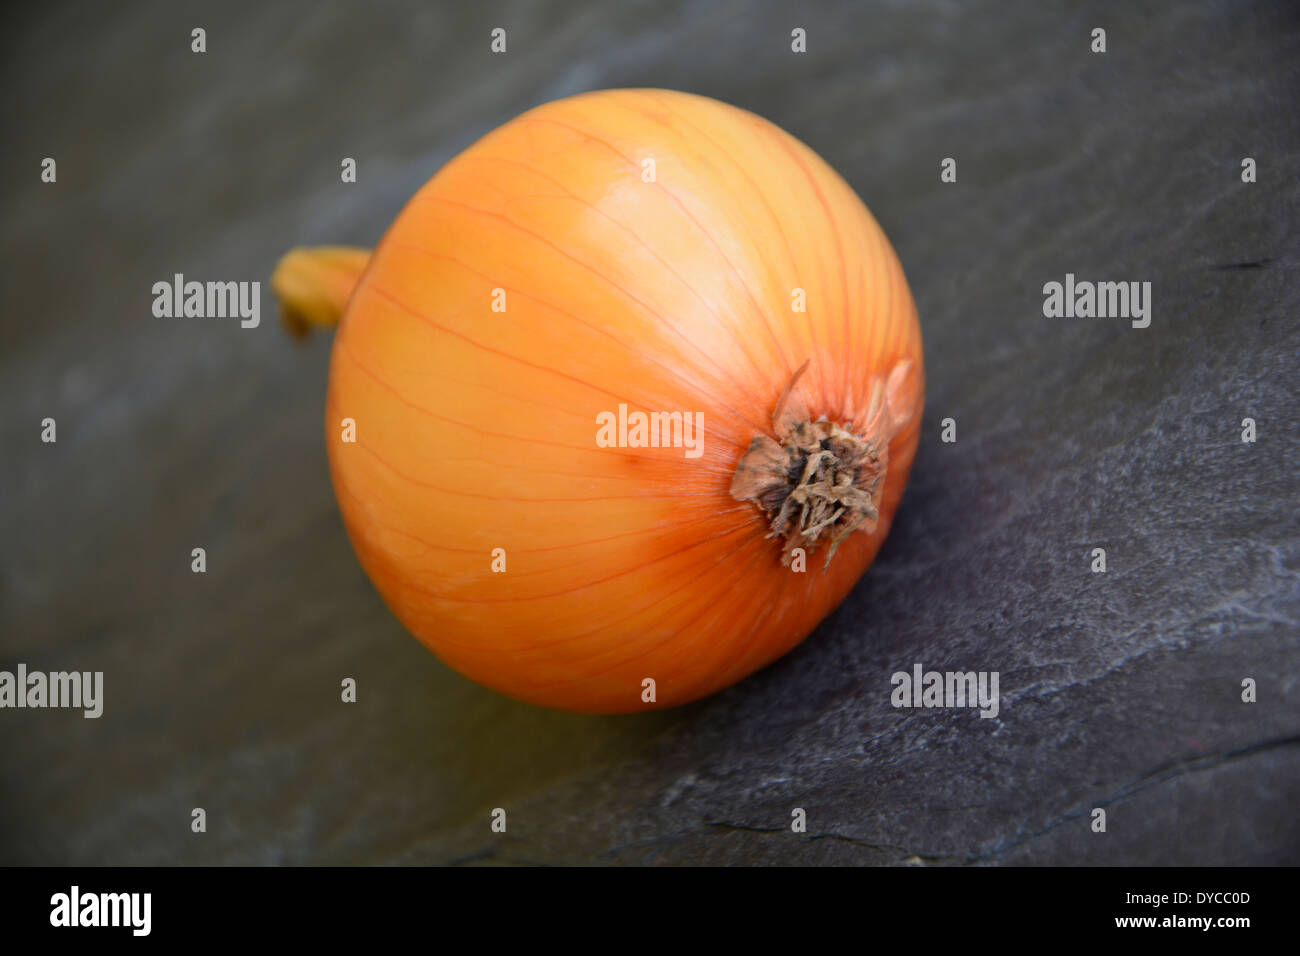 yellow onion on a anthacite grey slate plate background macro close-up eine ganze gelbe Zwiebel auf grauer Schieferplatte Stock Photo